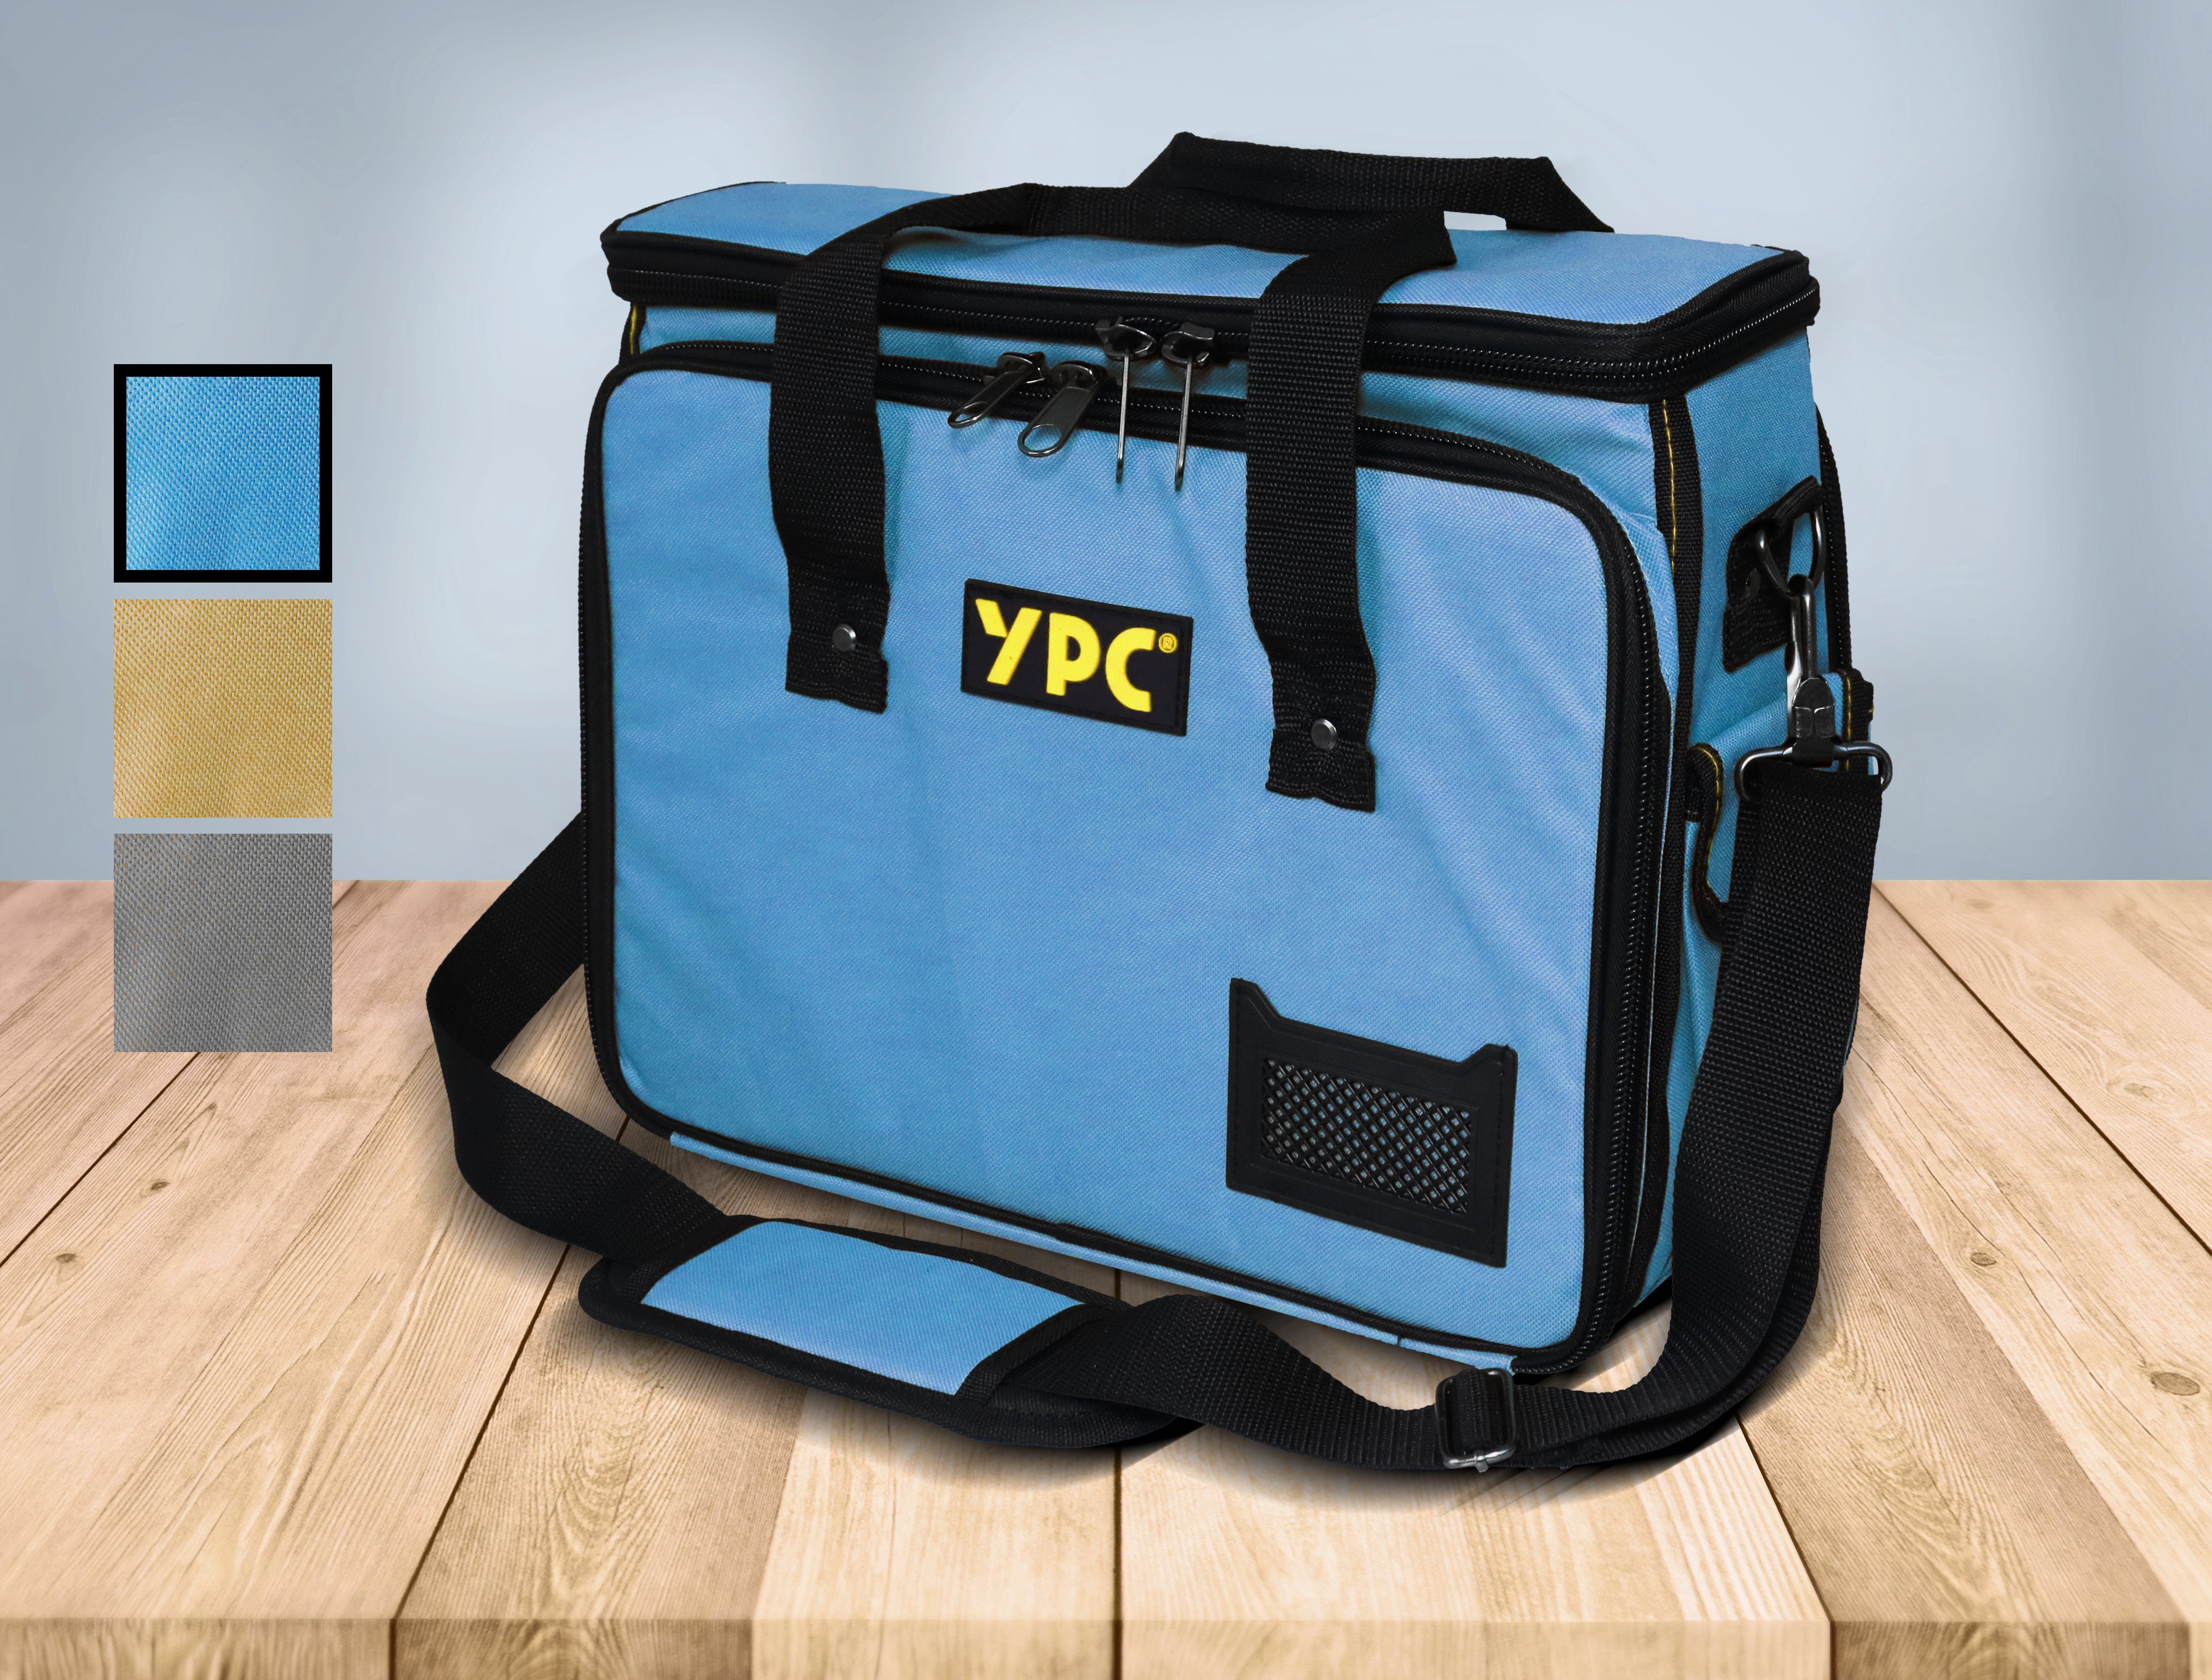 Tragkraft, Fächern Tragetasche kg Werkzeug YPC und Einschüben Werkzeugtasche "Operator" Werkzeugtasche 40x32x20cm, XL, Blau 20 Haltern, für mit Umhängetasche,